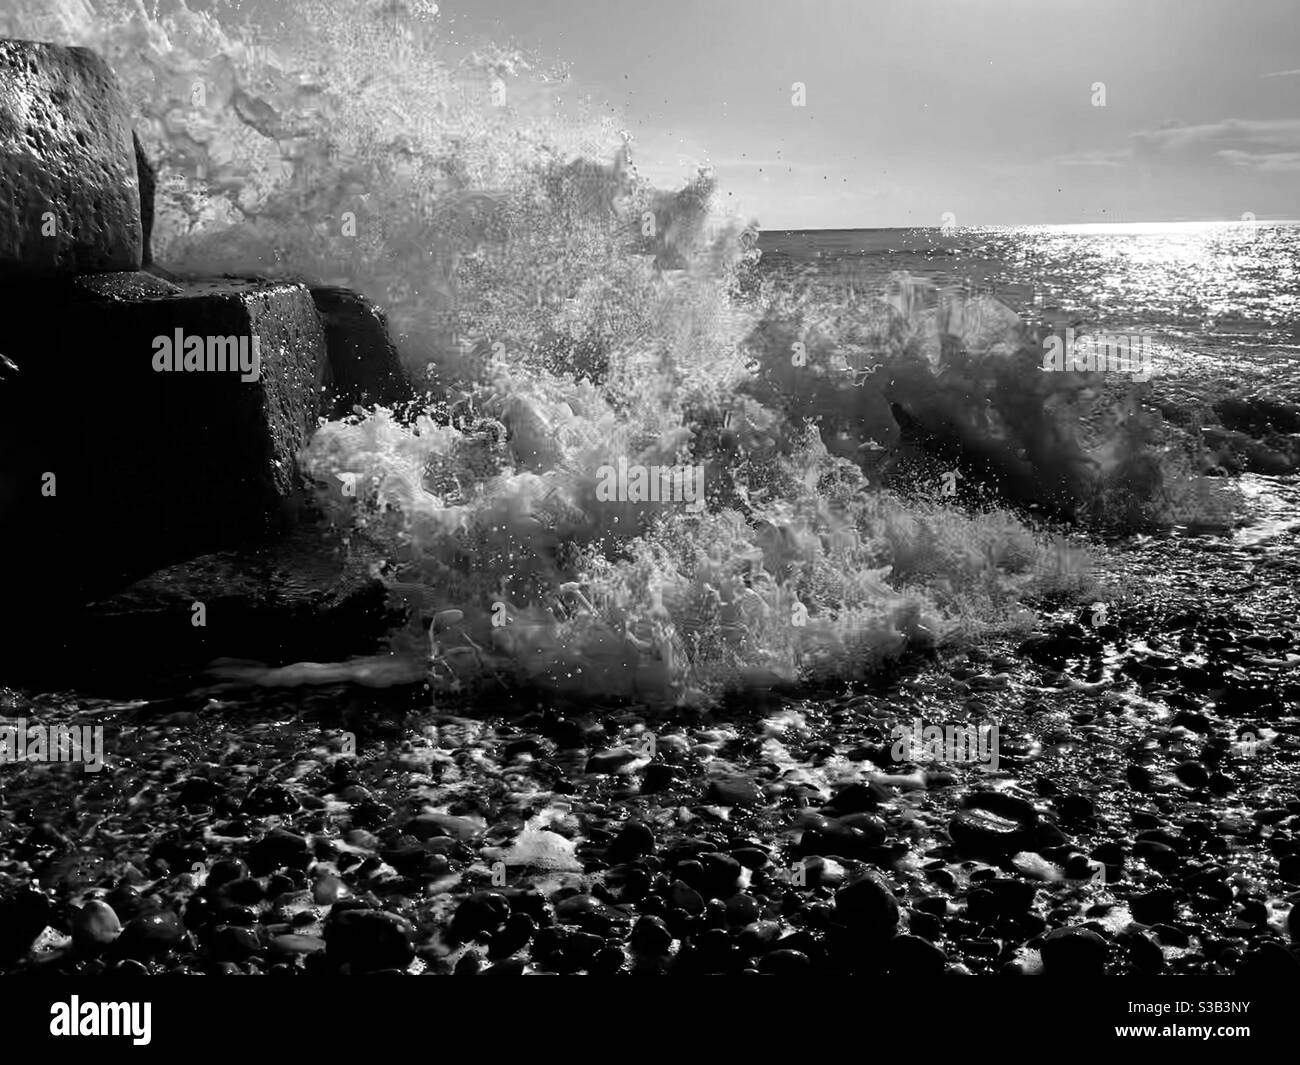 Crashing waves Stock Photo